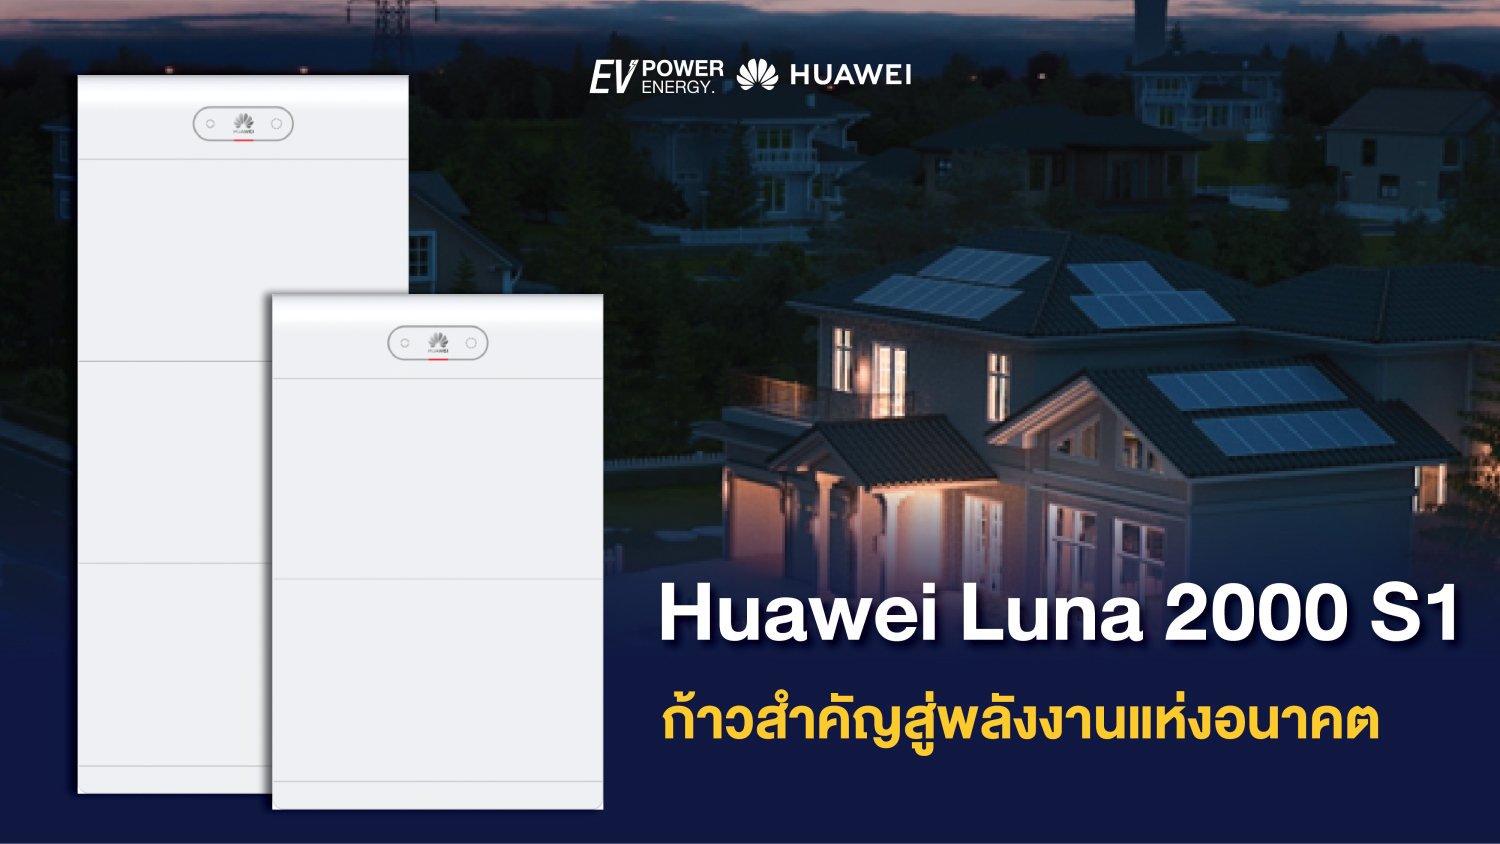 Huawei Luna 2000 S1 ก้าวสำคัญสู่พลังงานแห่งอนาคต 1